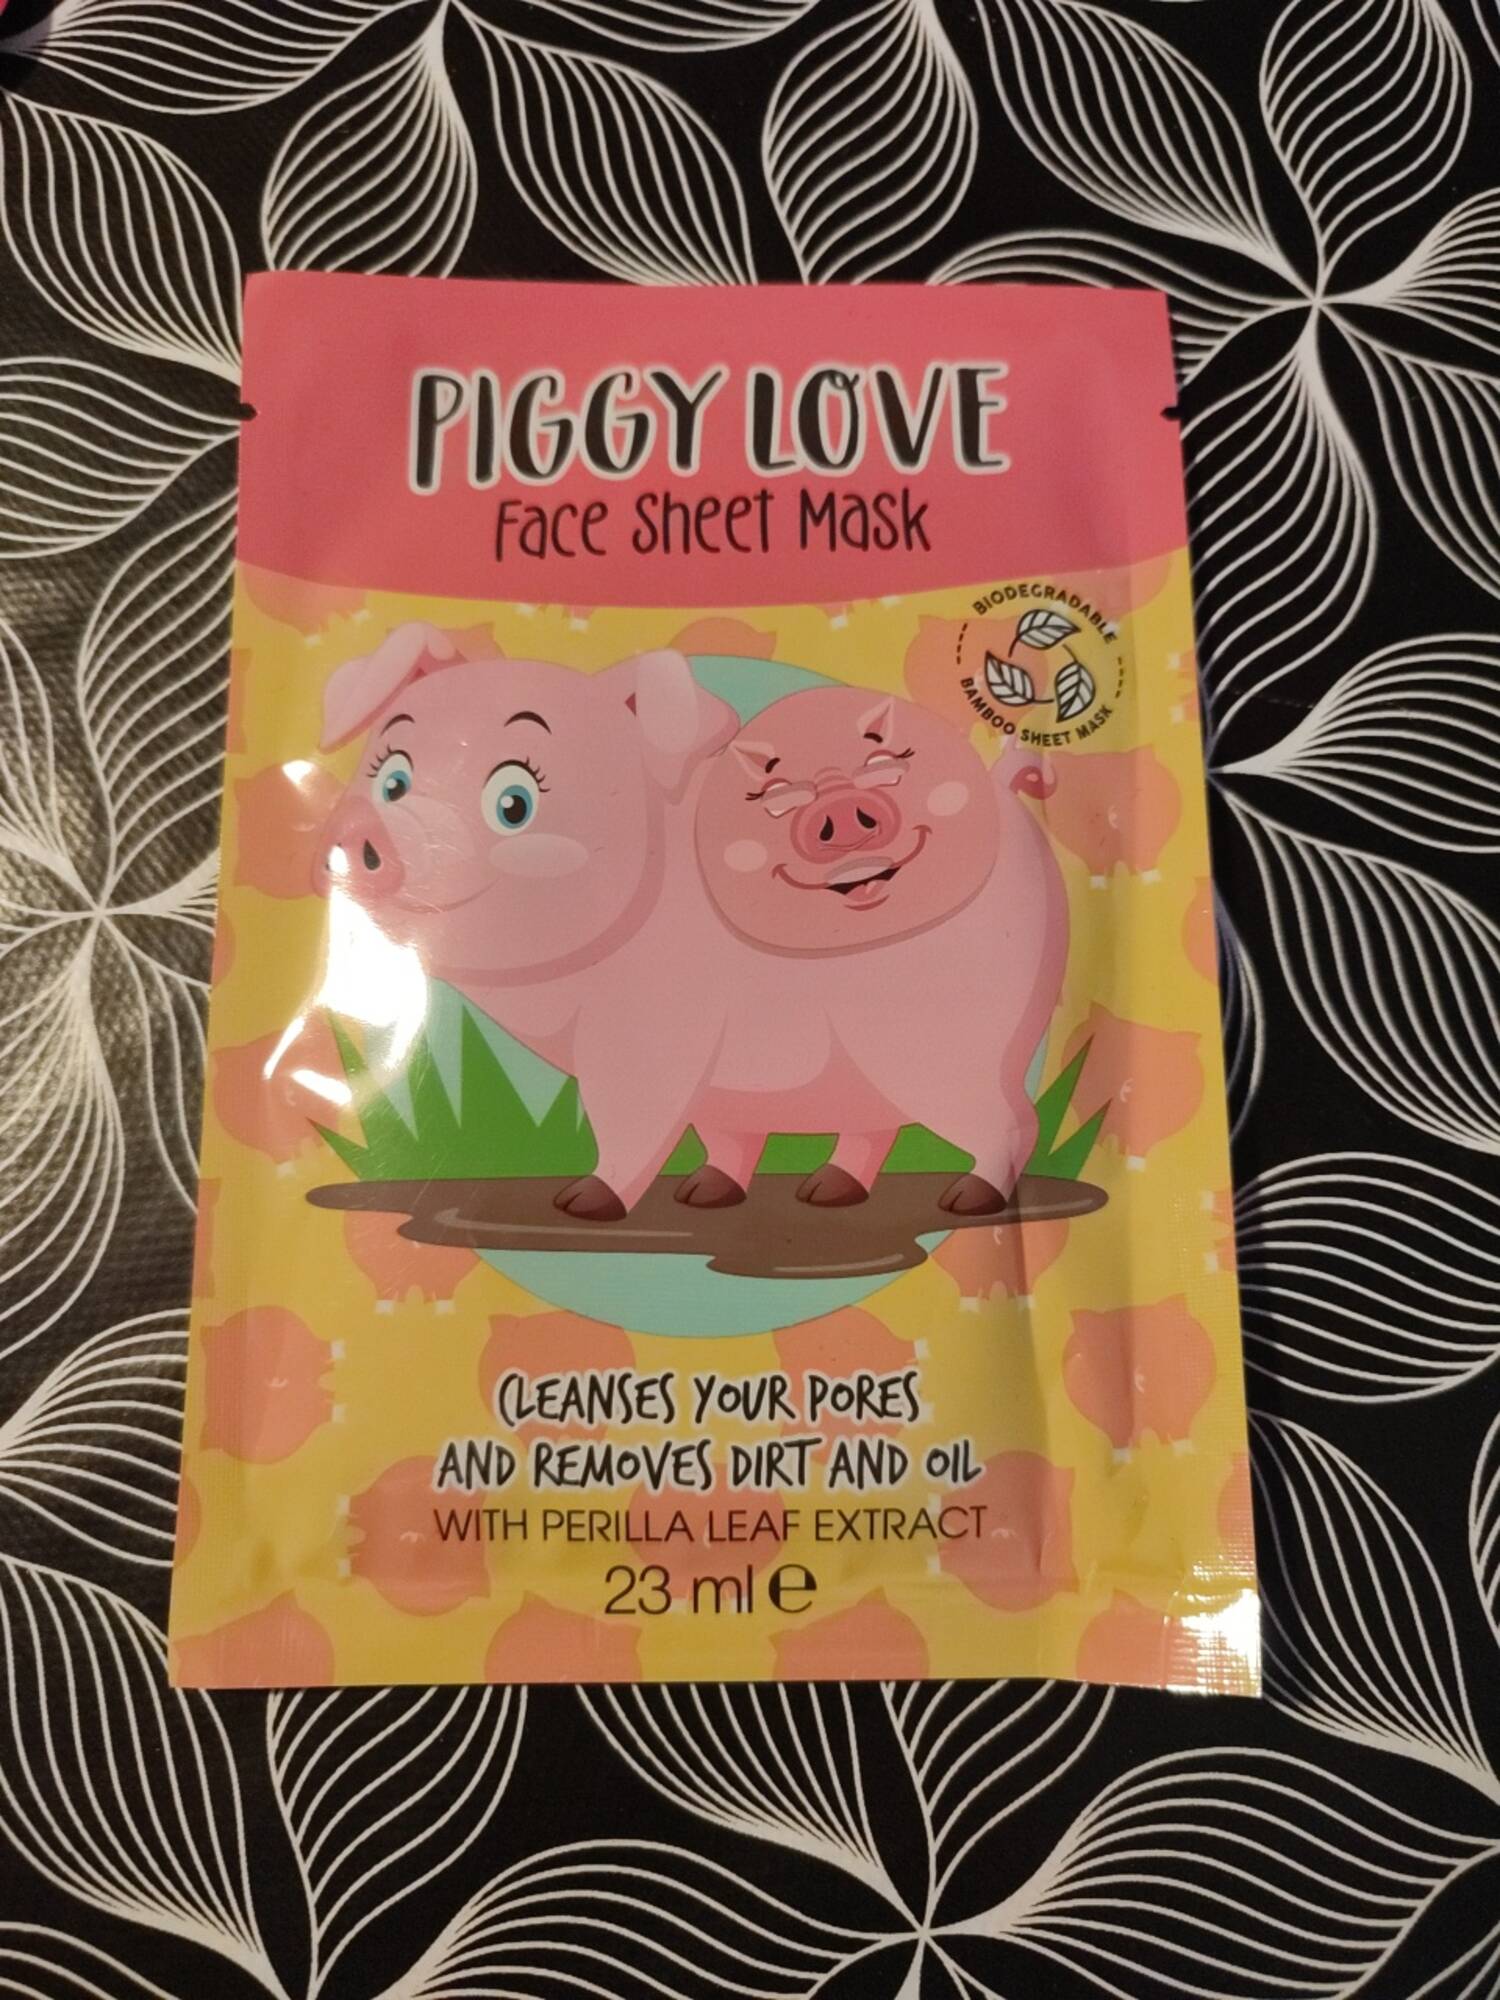 MAXBRANDS - Piggy love - Face sheet mask